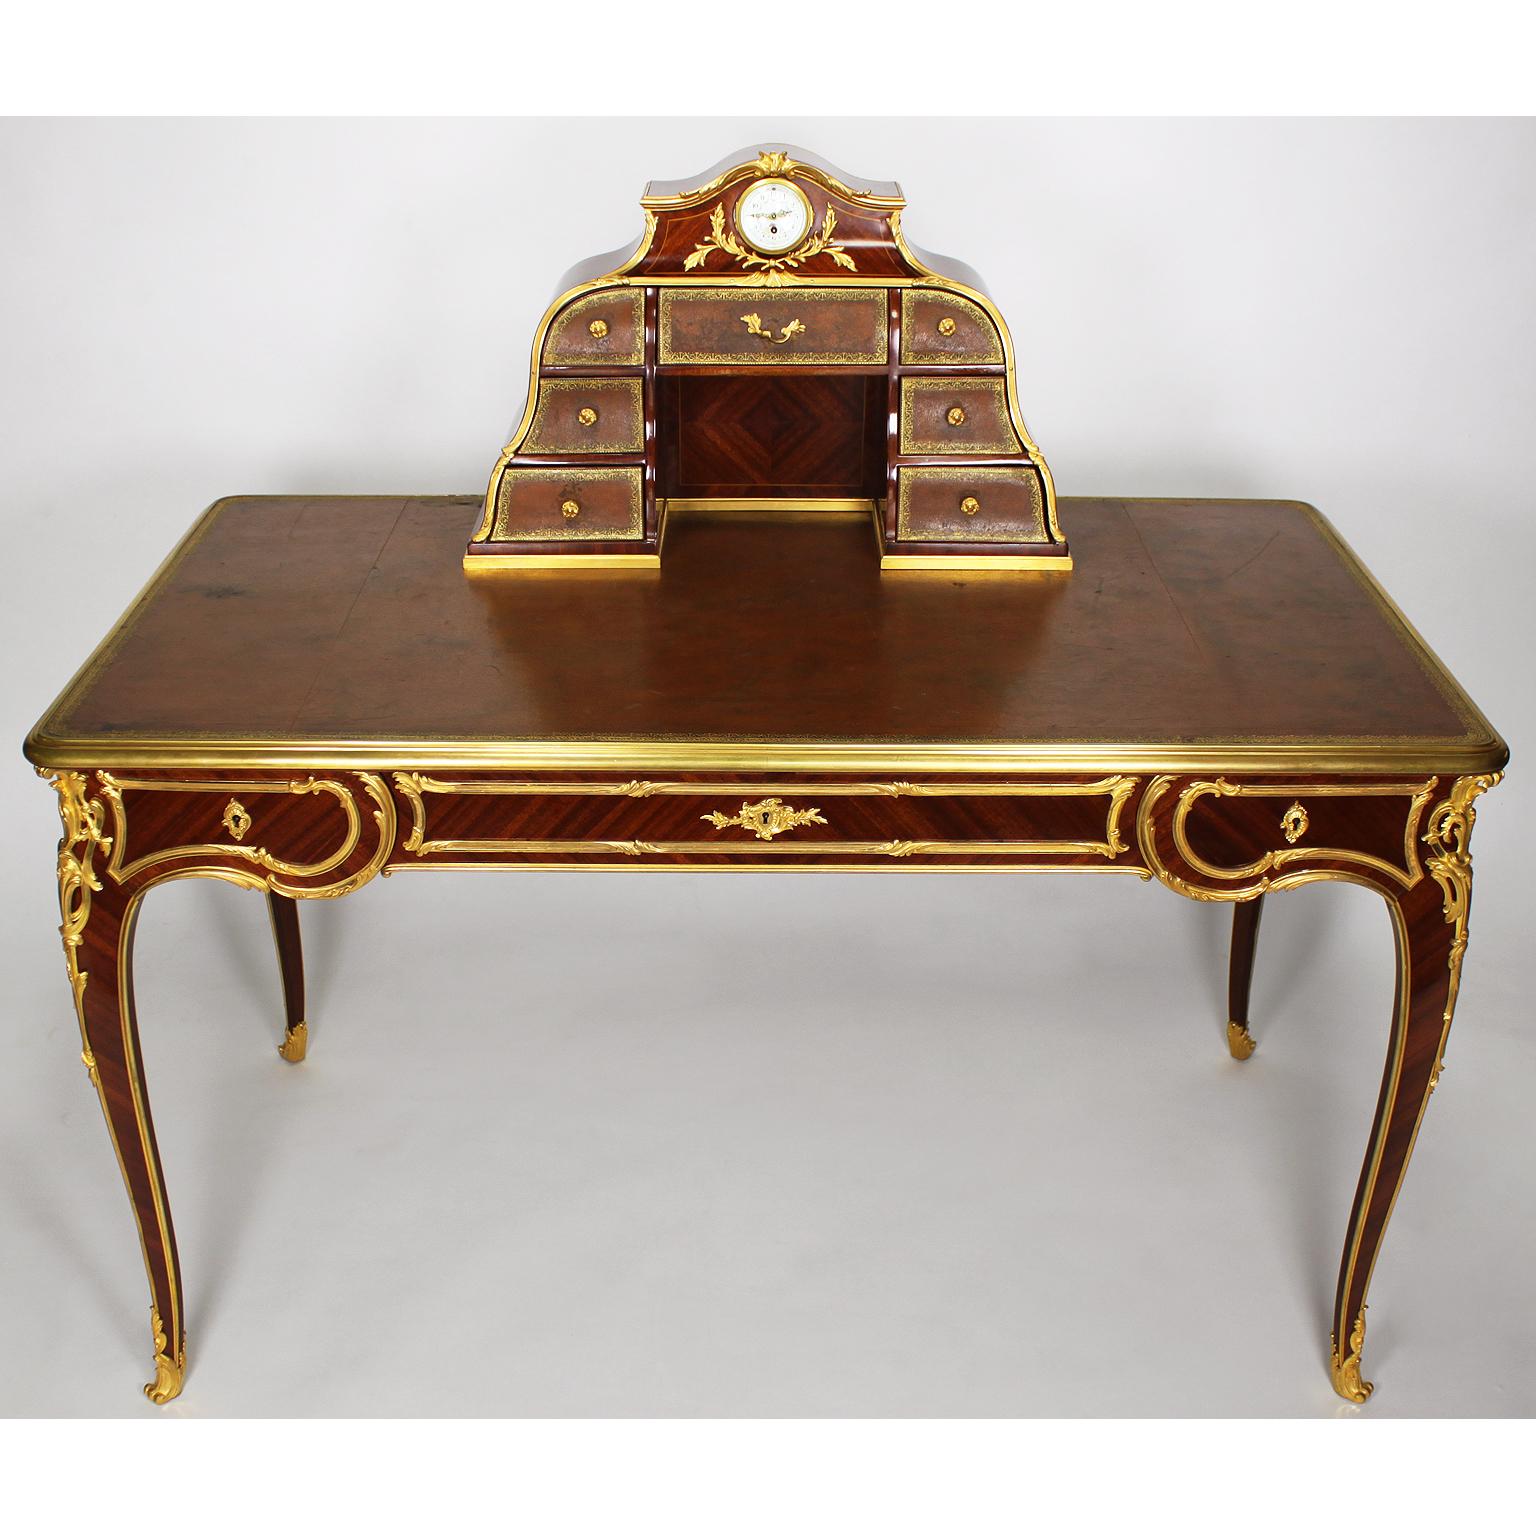 Très beau bureau plat (Desk - Writing Table - Ladies Desk) Cartonnier d'Antoine Krieger du 19e siècle, en quart de placage satiné avec des baguettes en bois fruitier, le cartonnier est orné d'une montre circulaire au-dessus de sept tiroirs à